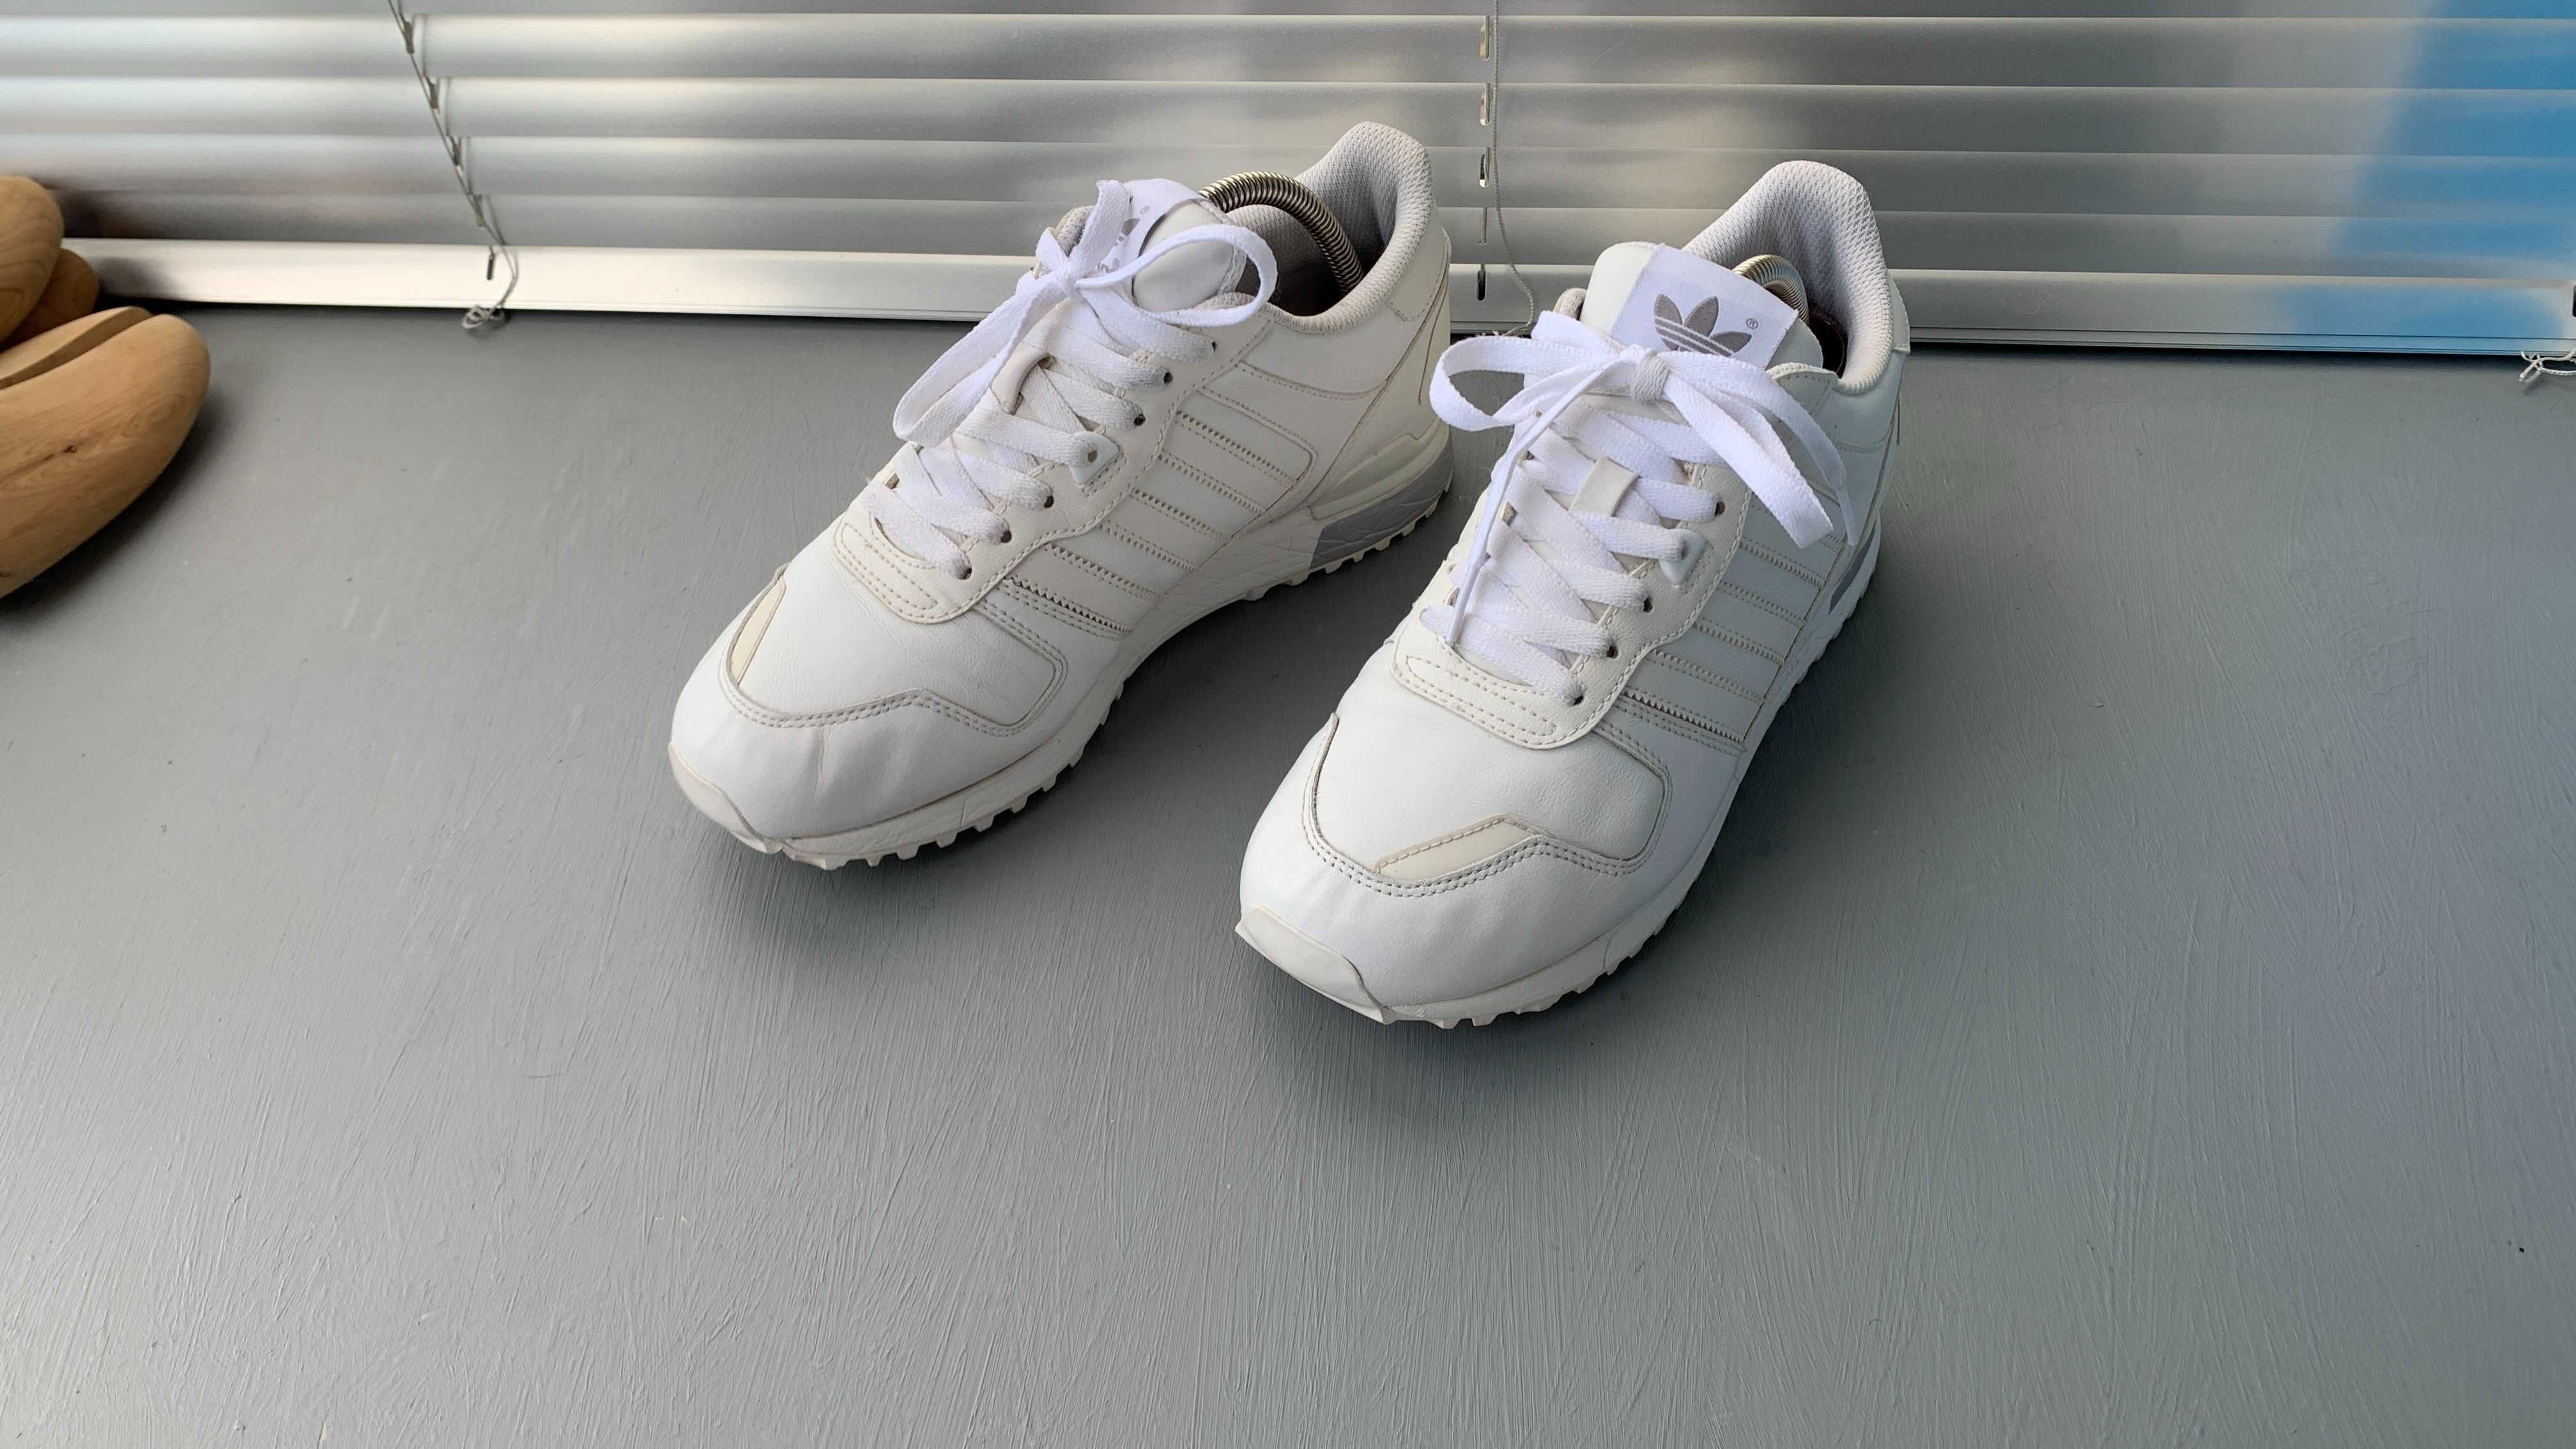 Продам Adidas ZX700 оригинал белые кроссовки 41